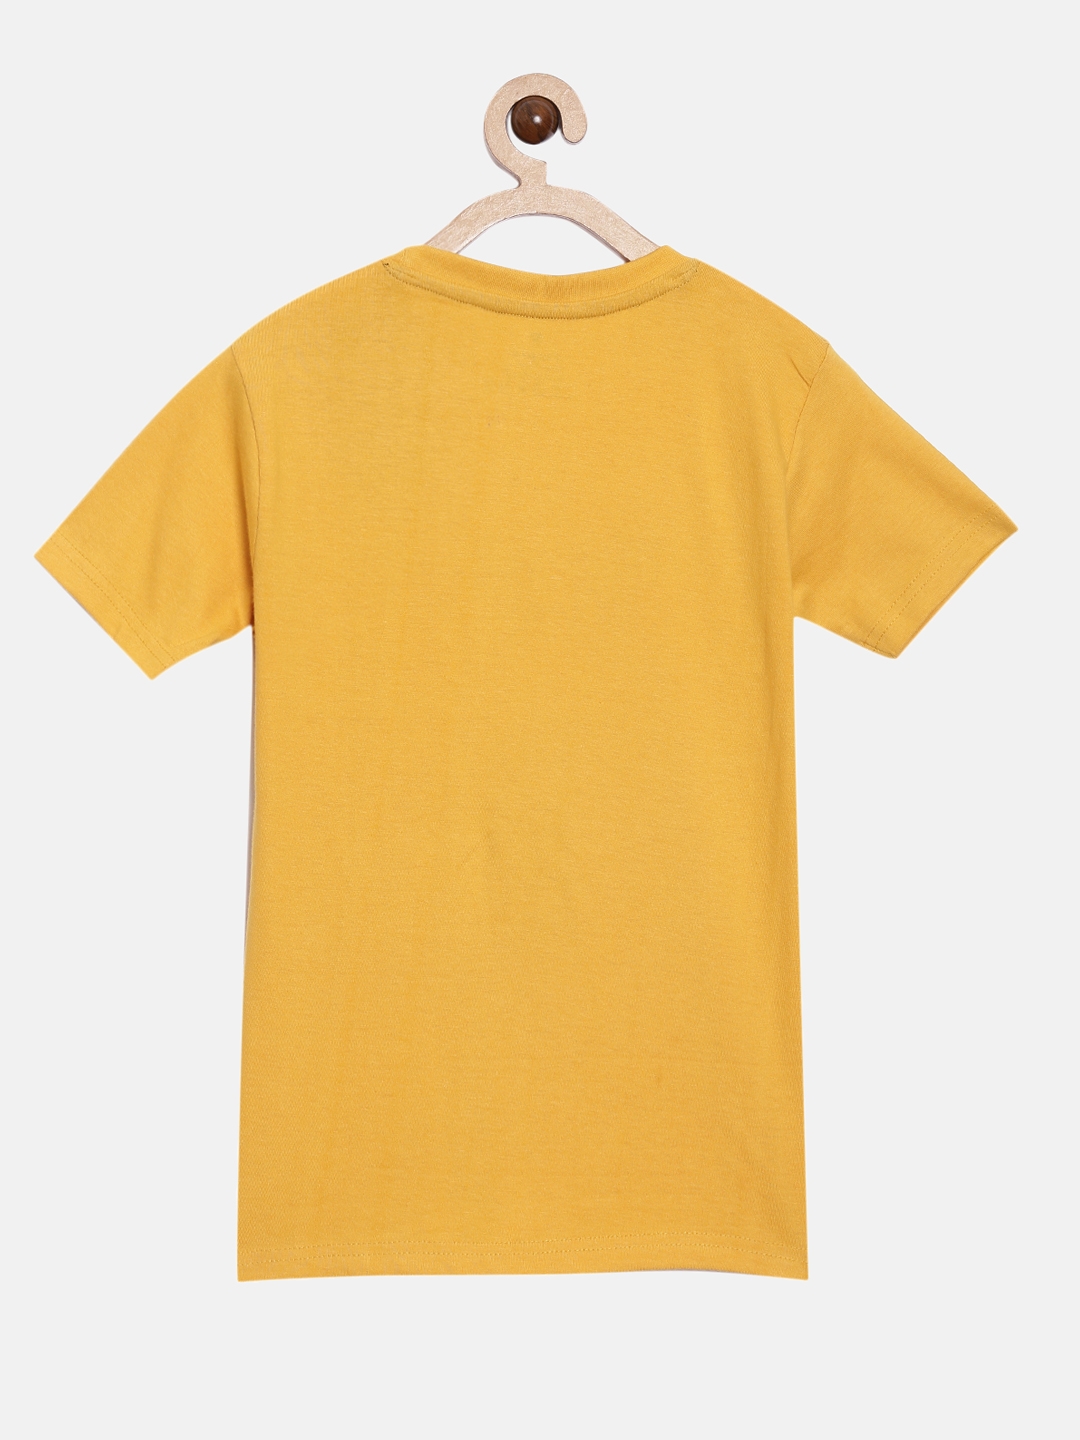 Peejas | Peejas 100% Cotton Boys  Printed Round Neck Short Sleeves Tshirts 3